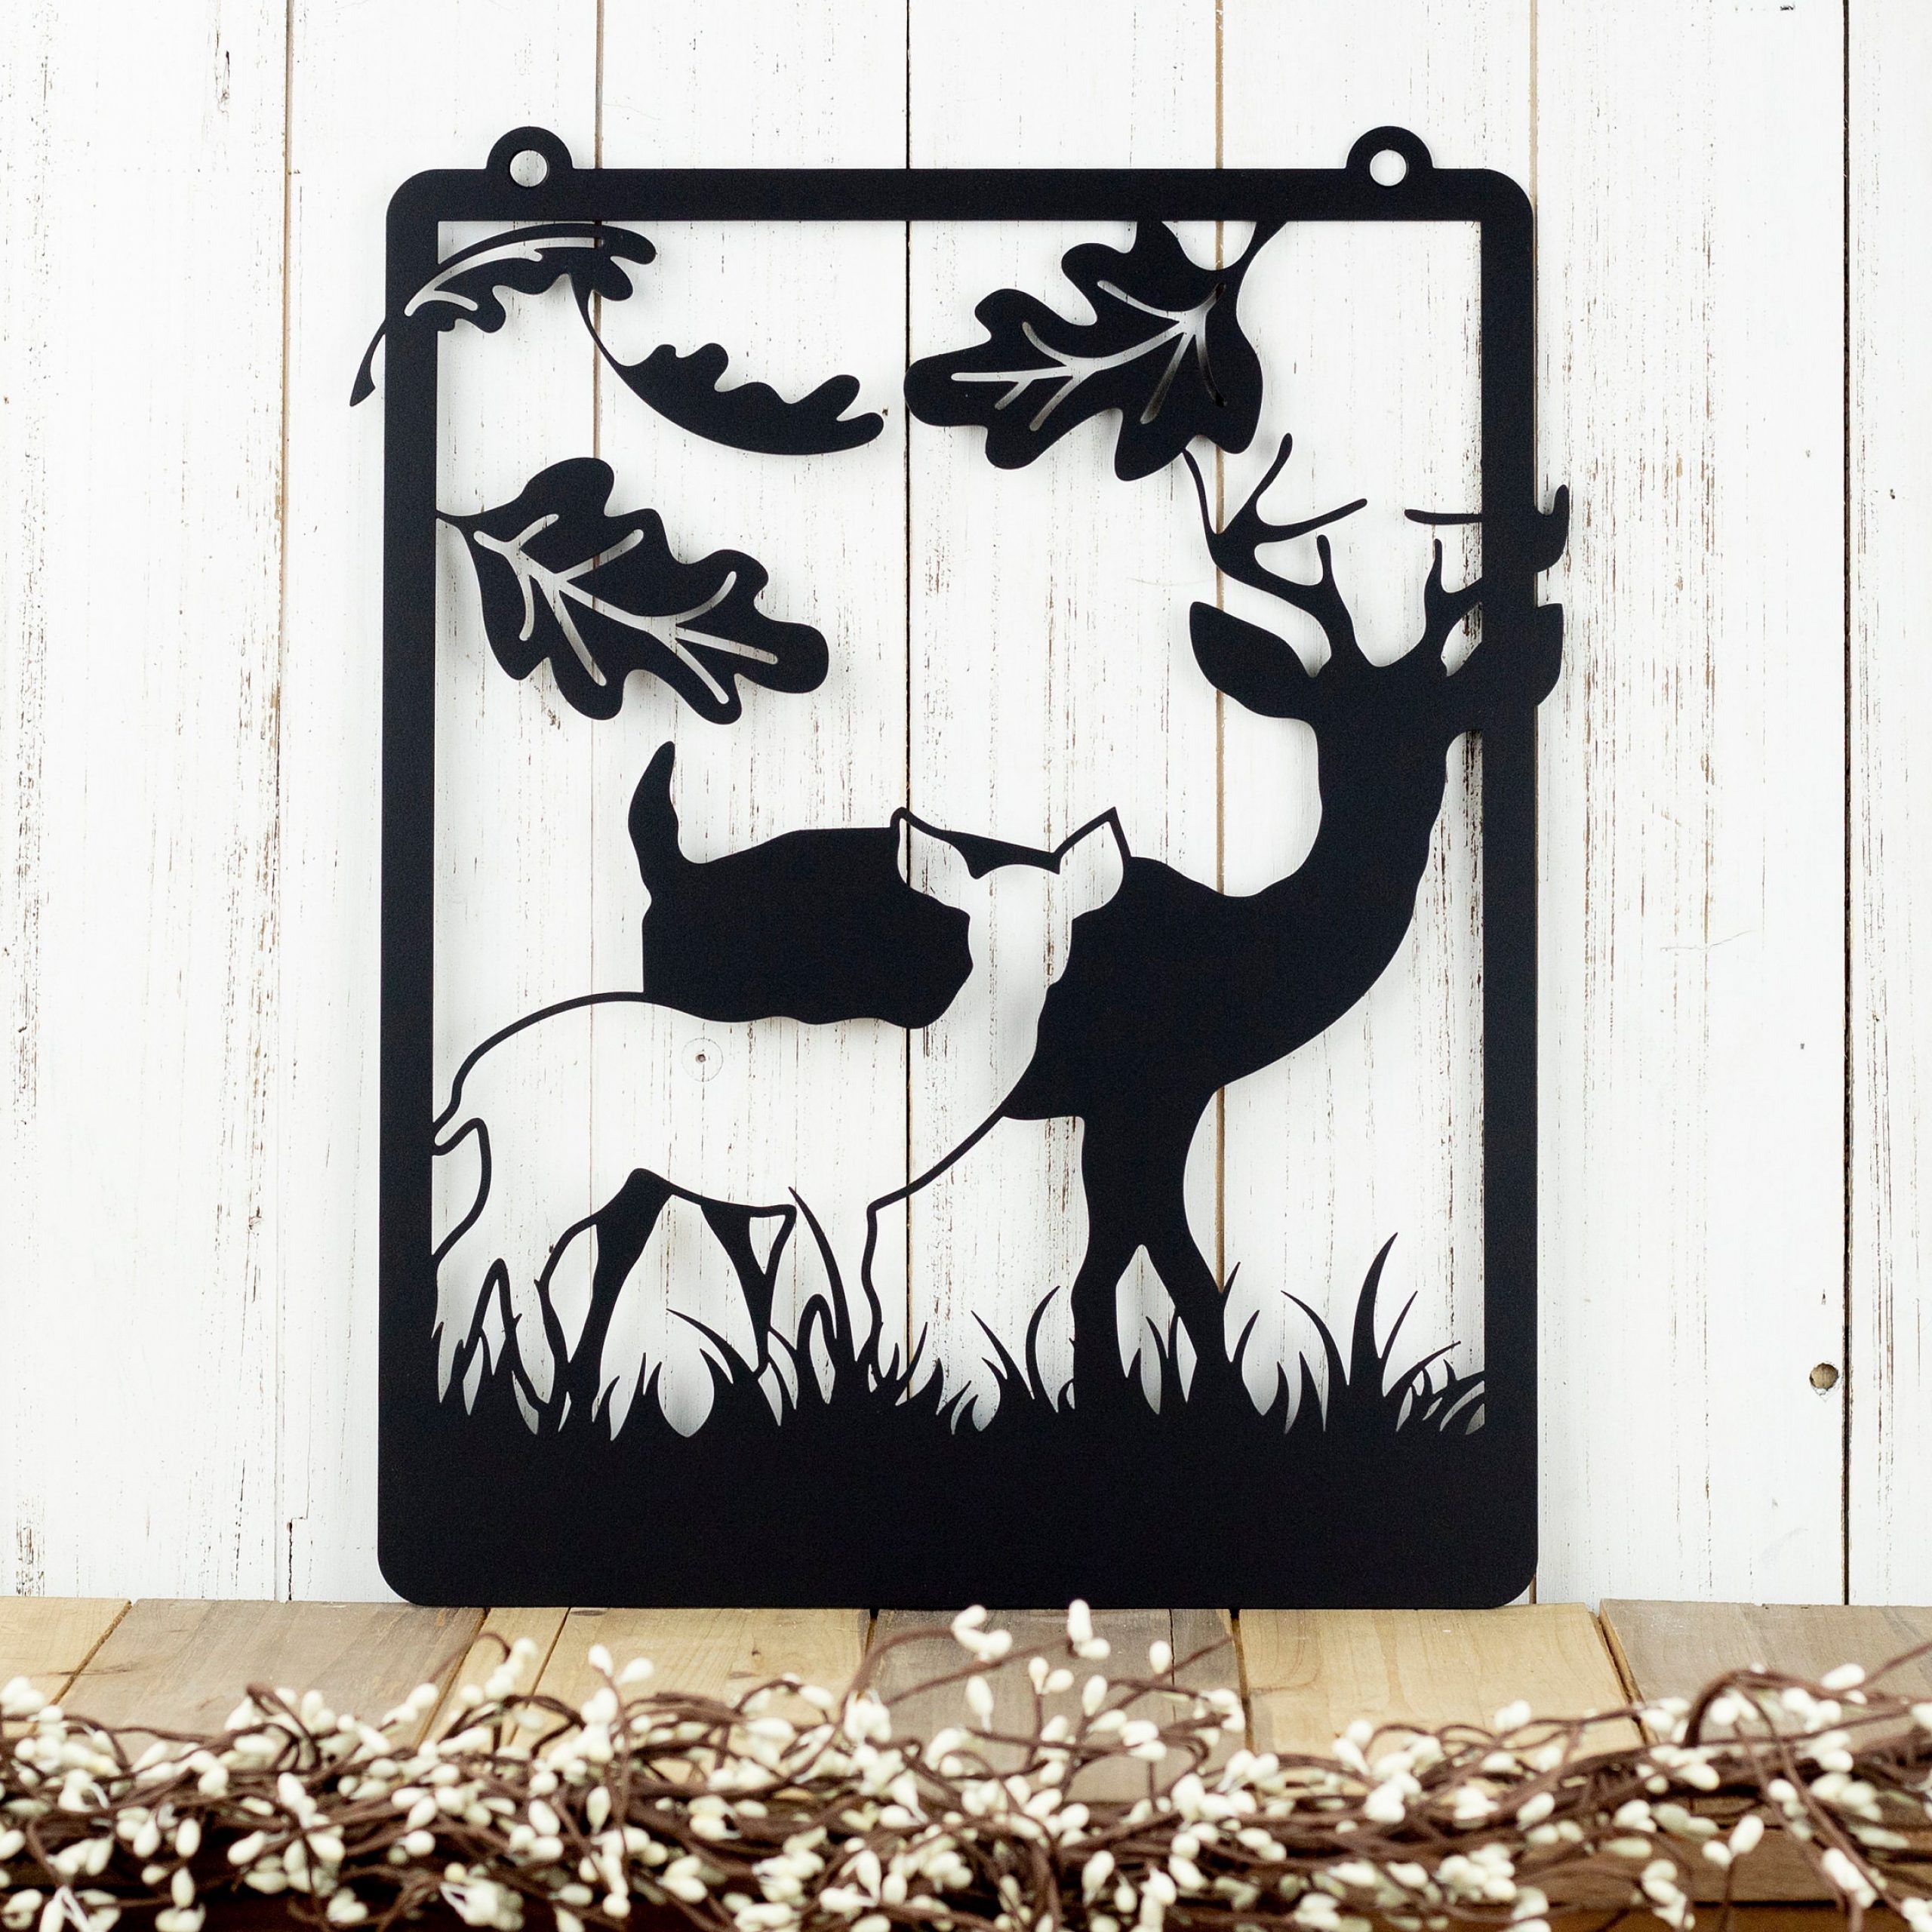 Deer Garden Hanging Metal Wall Art – Black, 12.5x (View 14 of 15)